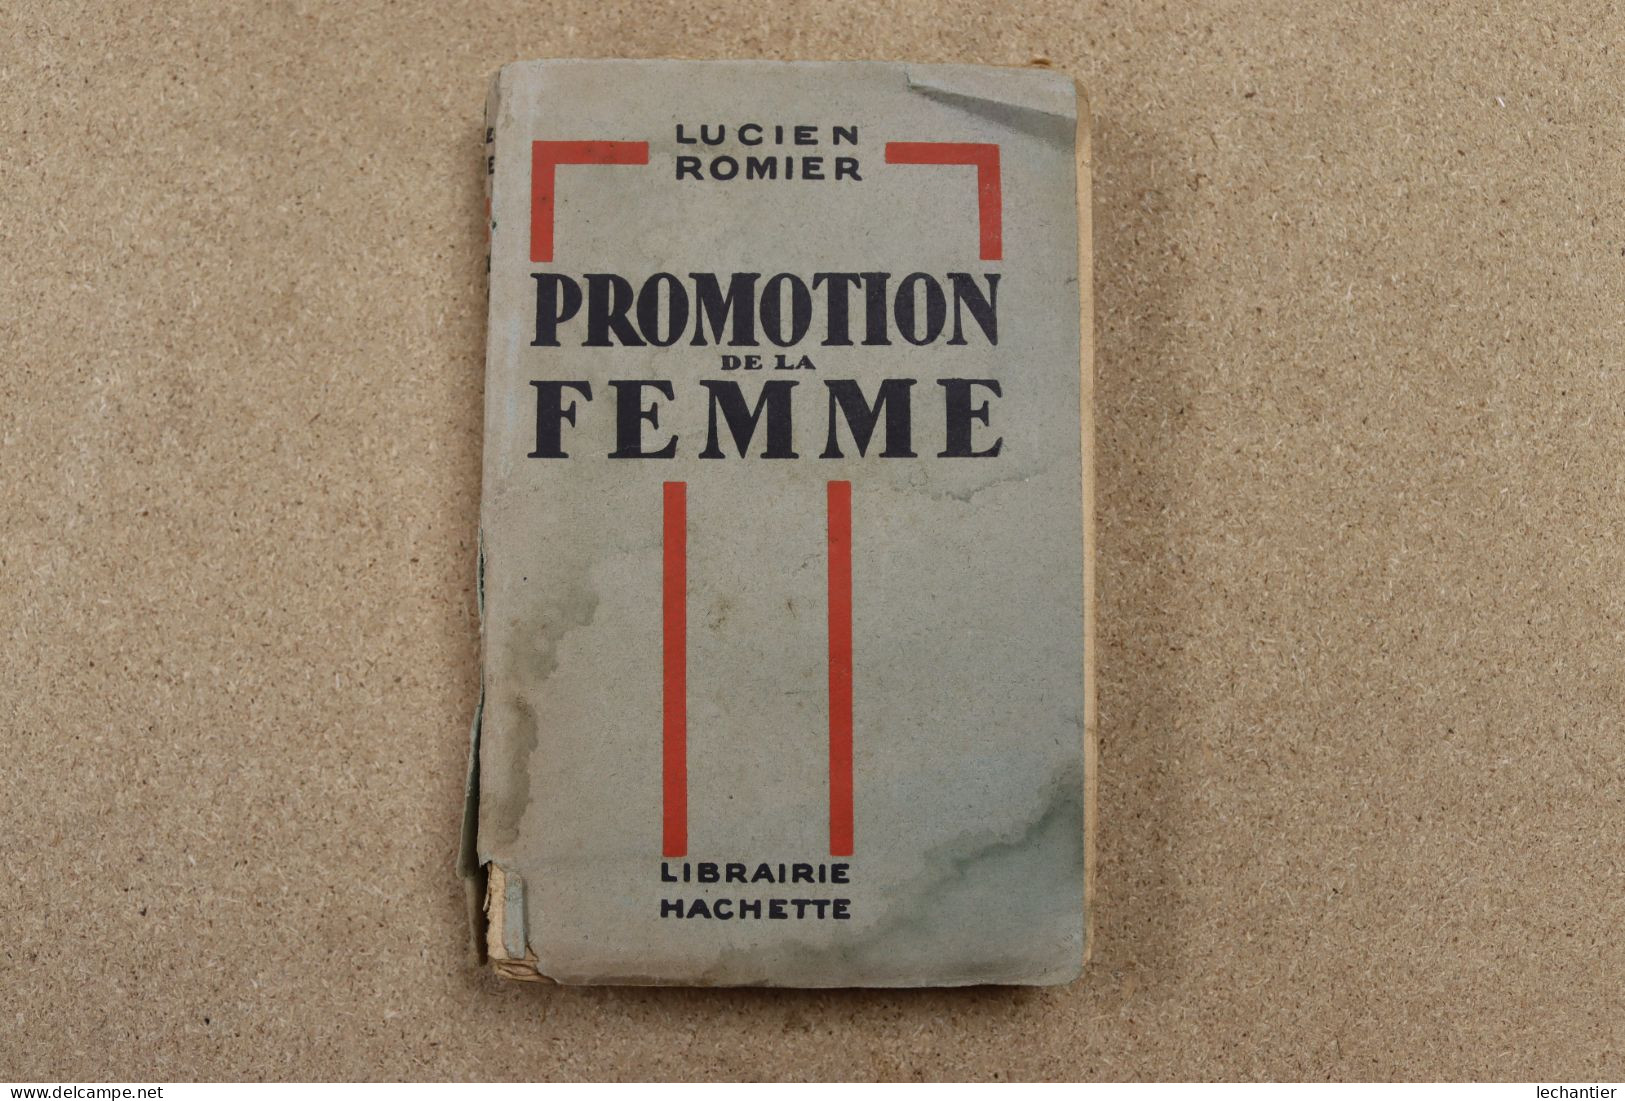 Promotion De La Femme - Lucien Romier - Hachette 1930 , 250 Pages 12,5X19 - Sociologie